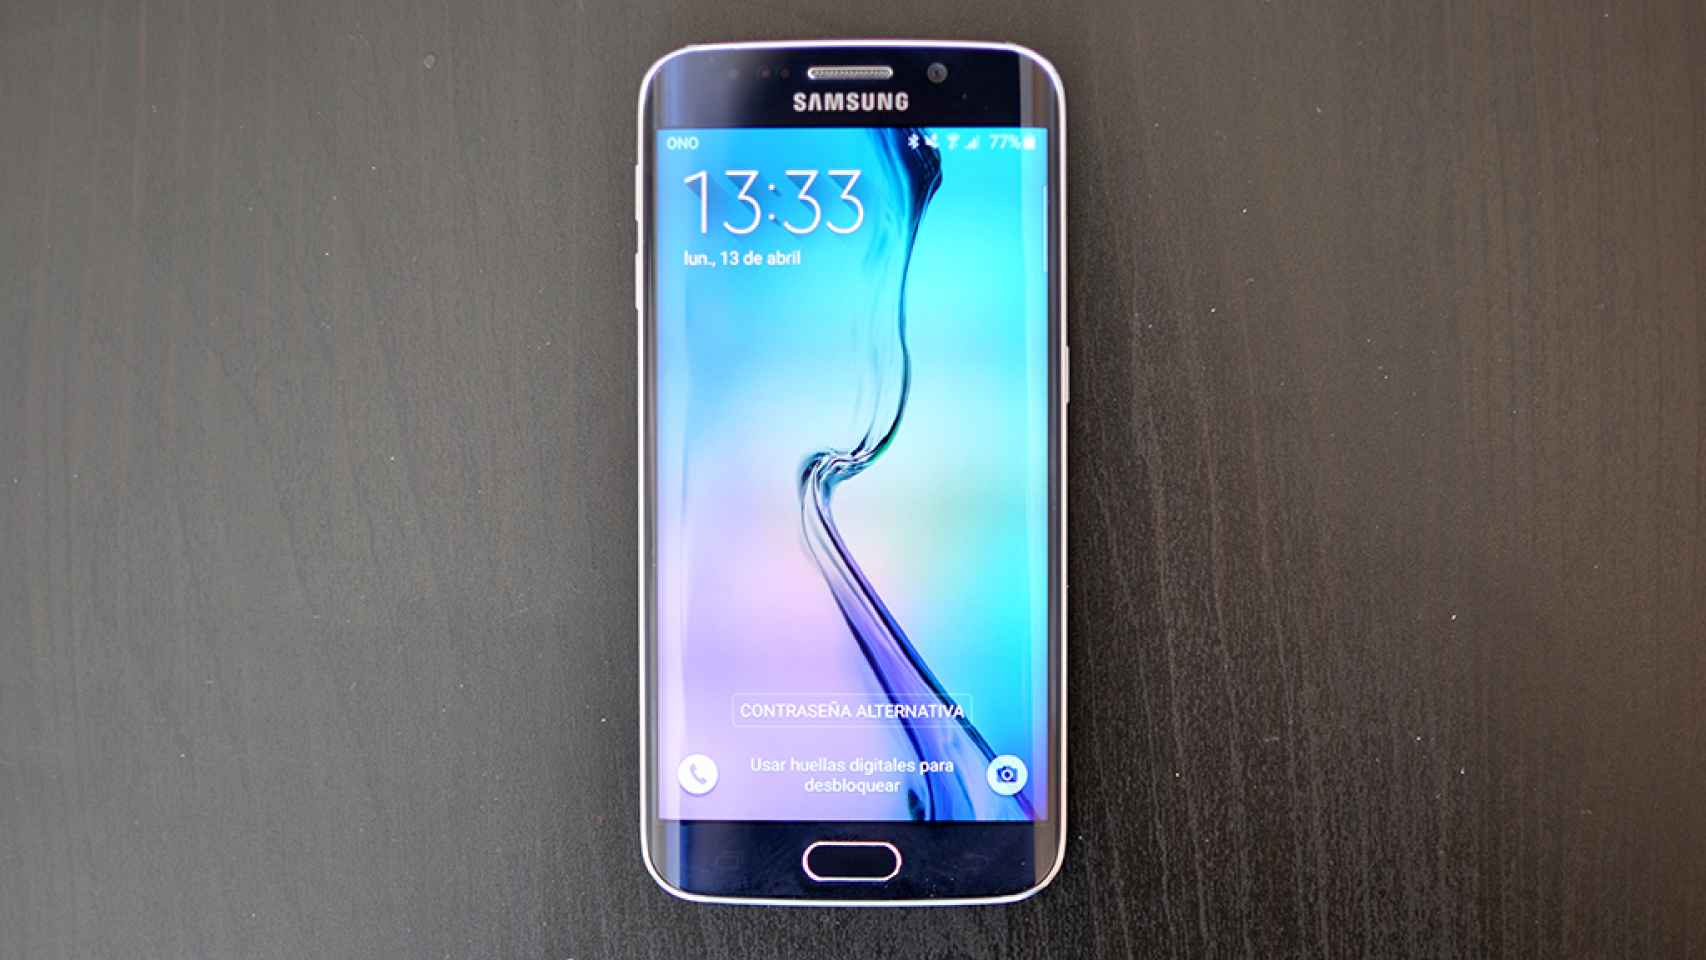 Samsung Galaxy S6 Edge: Análisis y experiencia de uso